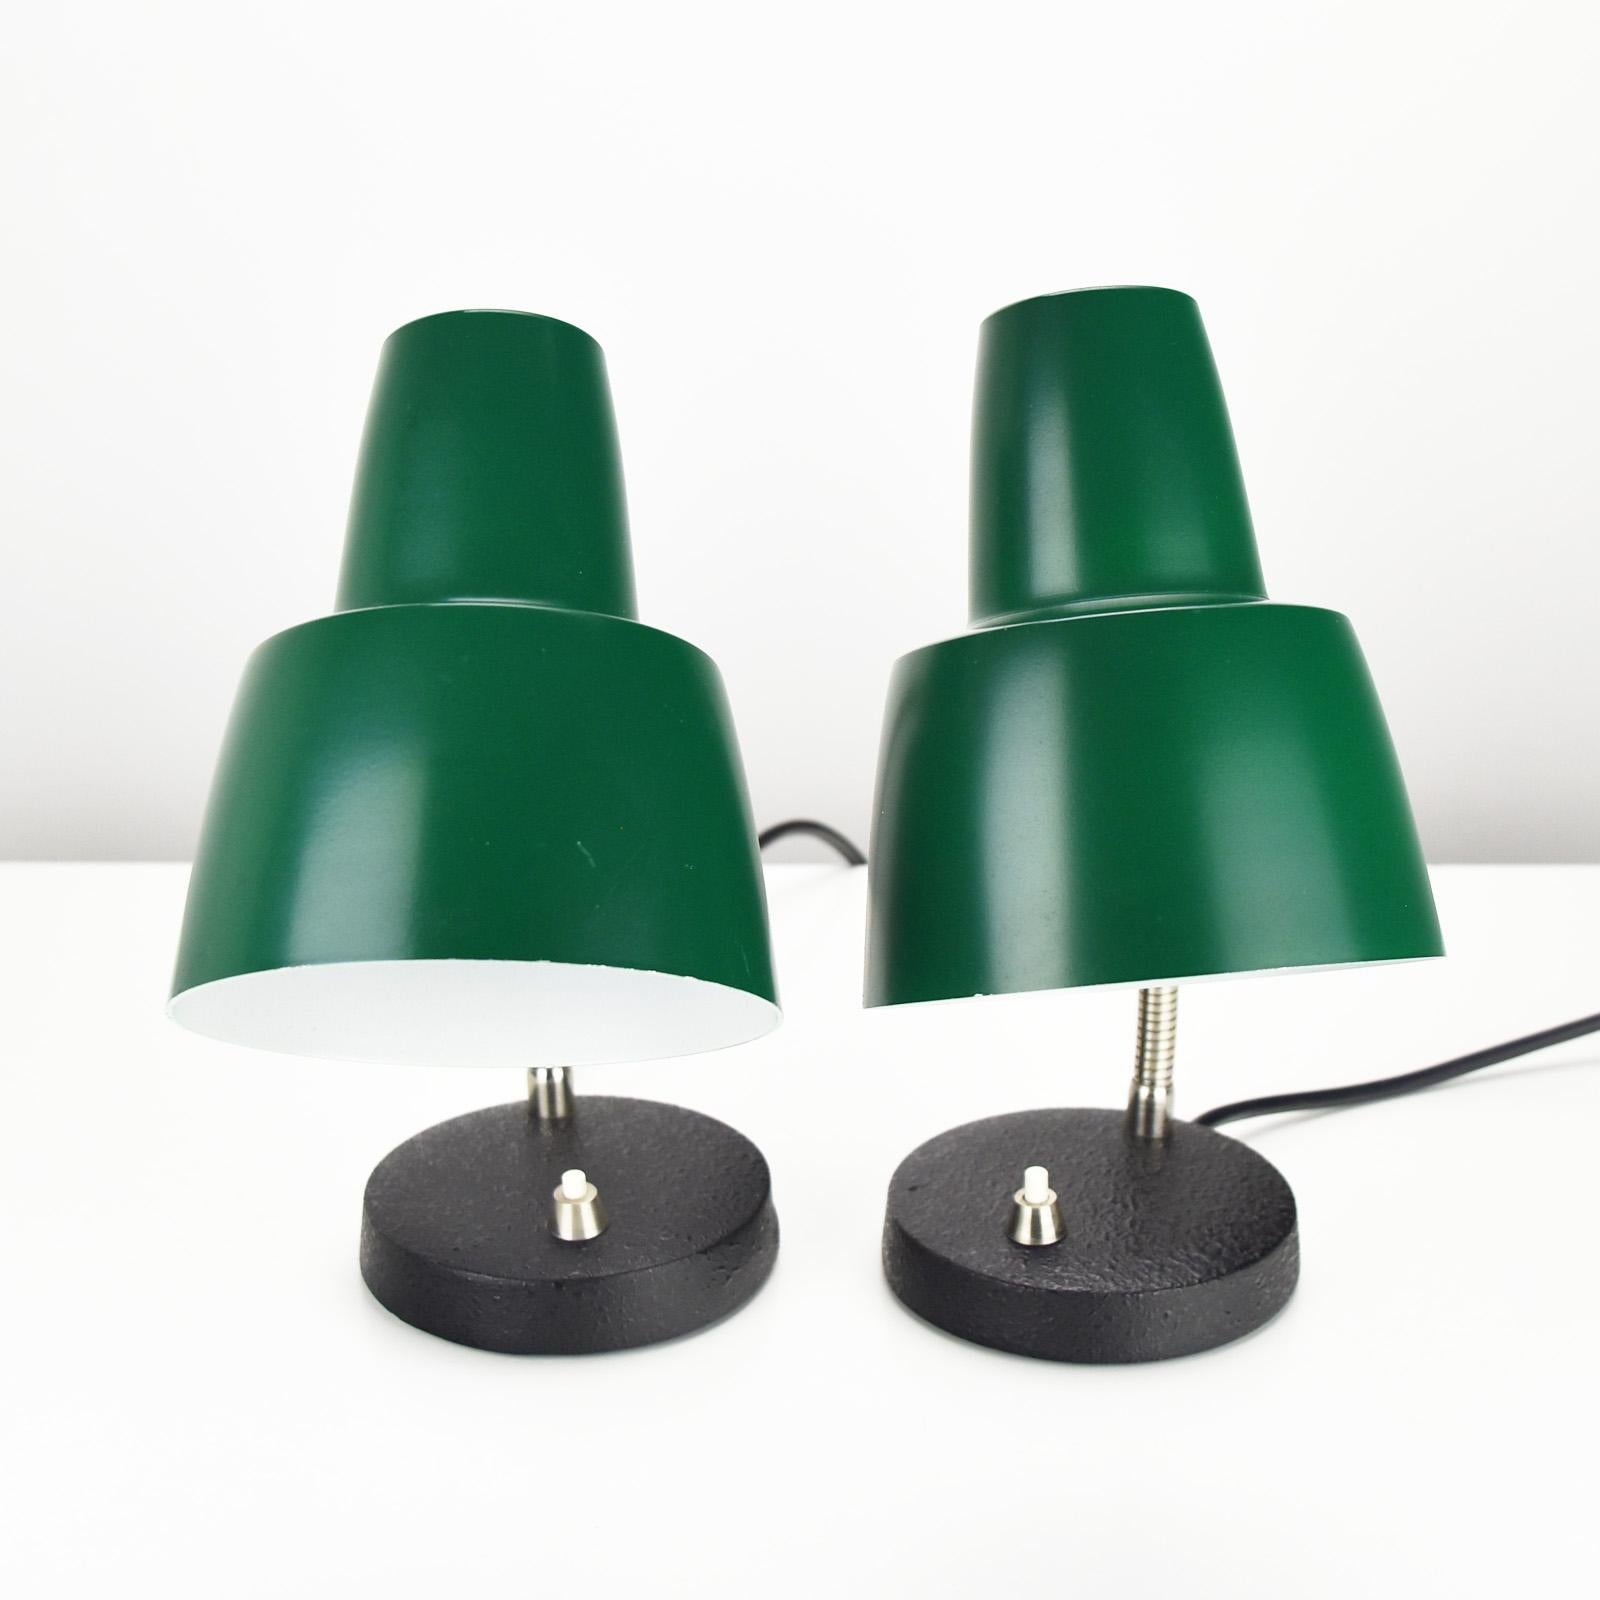 Belle paire de lampes de chevet du fabricant allemand Hillebrand datant des années 1960. 
Les lampes sont en parfait état, nettoyées et fonctionnent parfaitement. 
La base est en fonte patinée noire, le col de cygne chromé et les abat-jours laqués